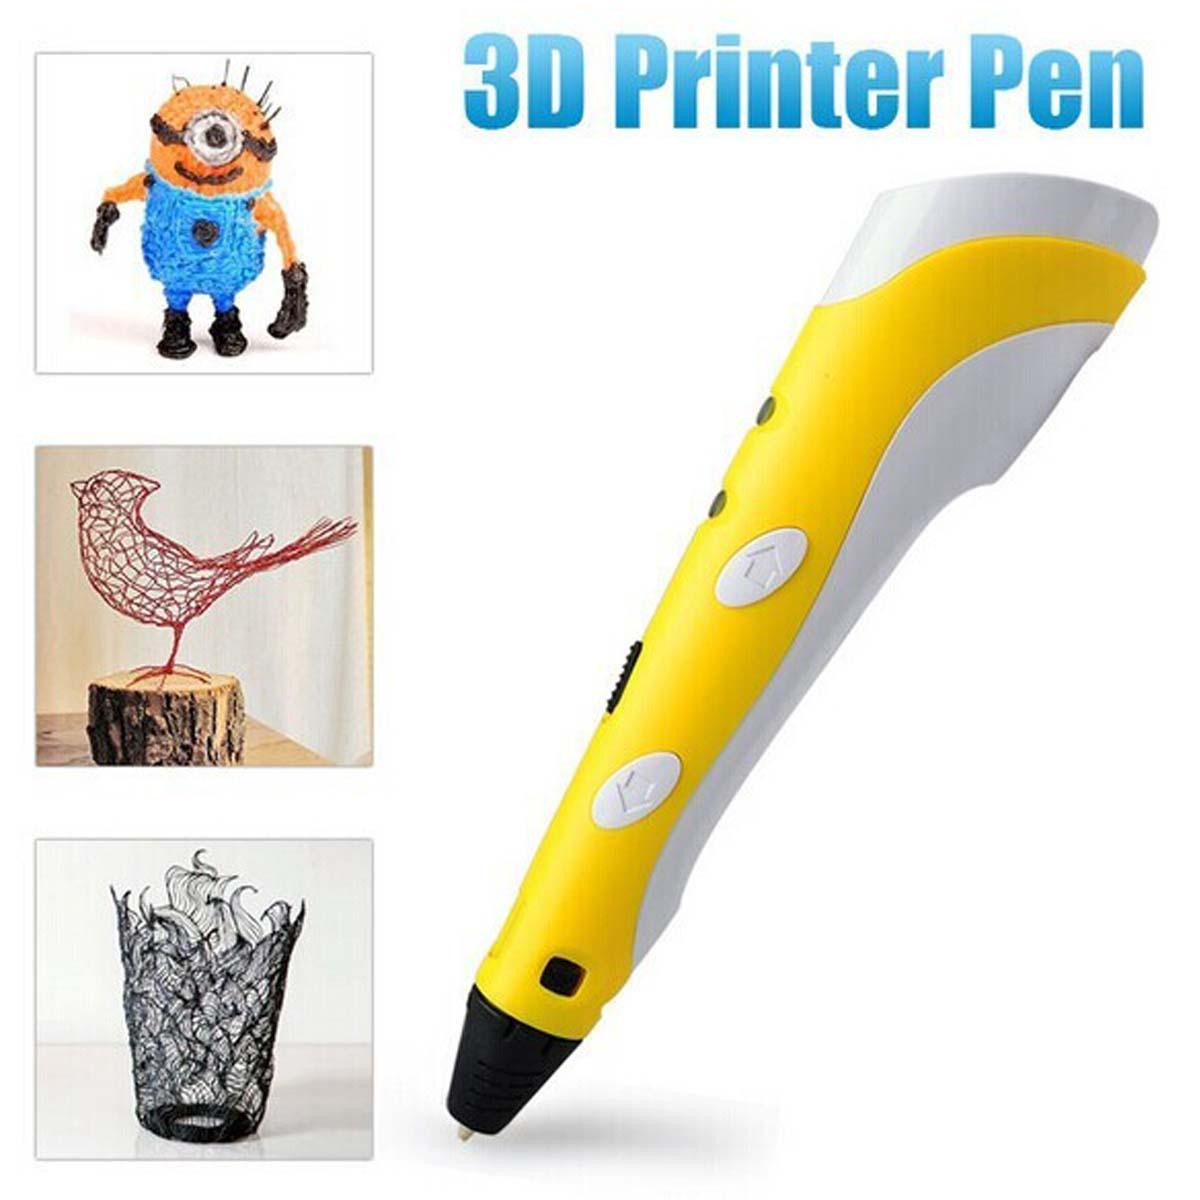 3Д ручка 3D pen-2 для создания объемных изображений с LCD-дисплеем и блоком зарядки, фото 1